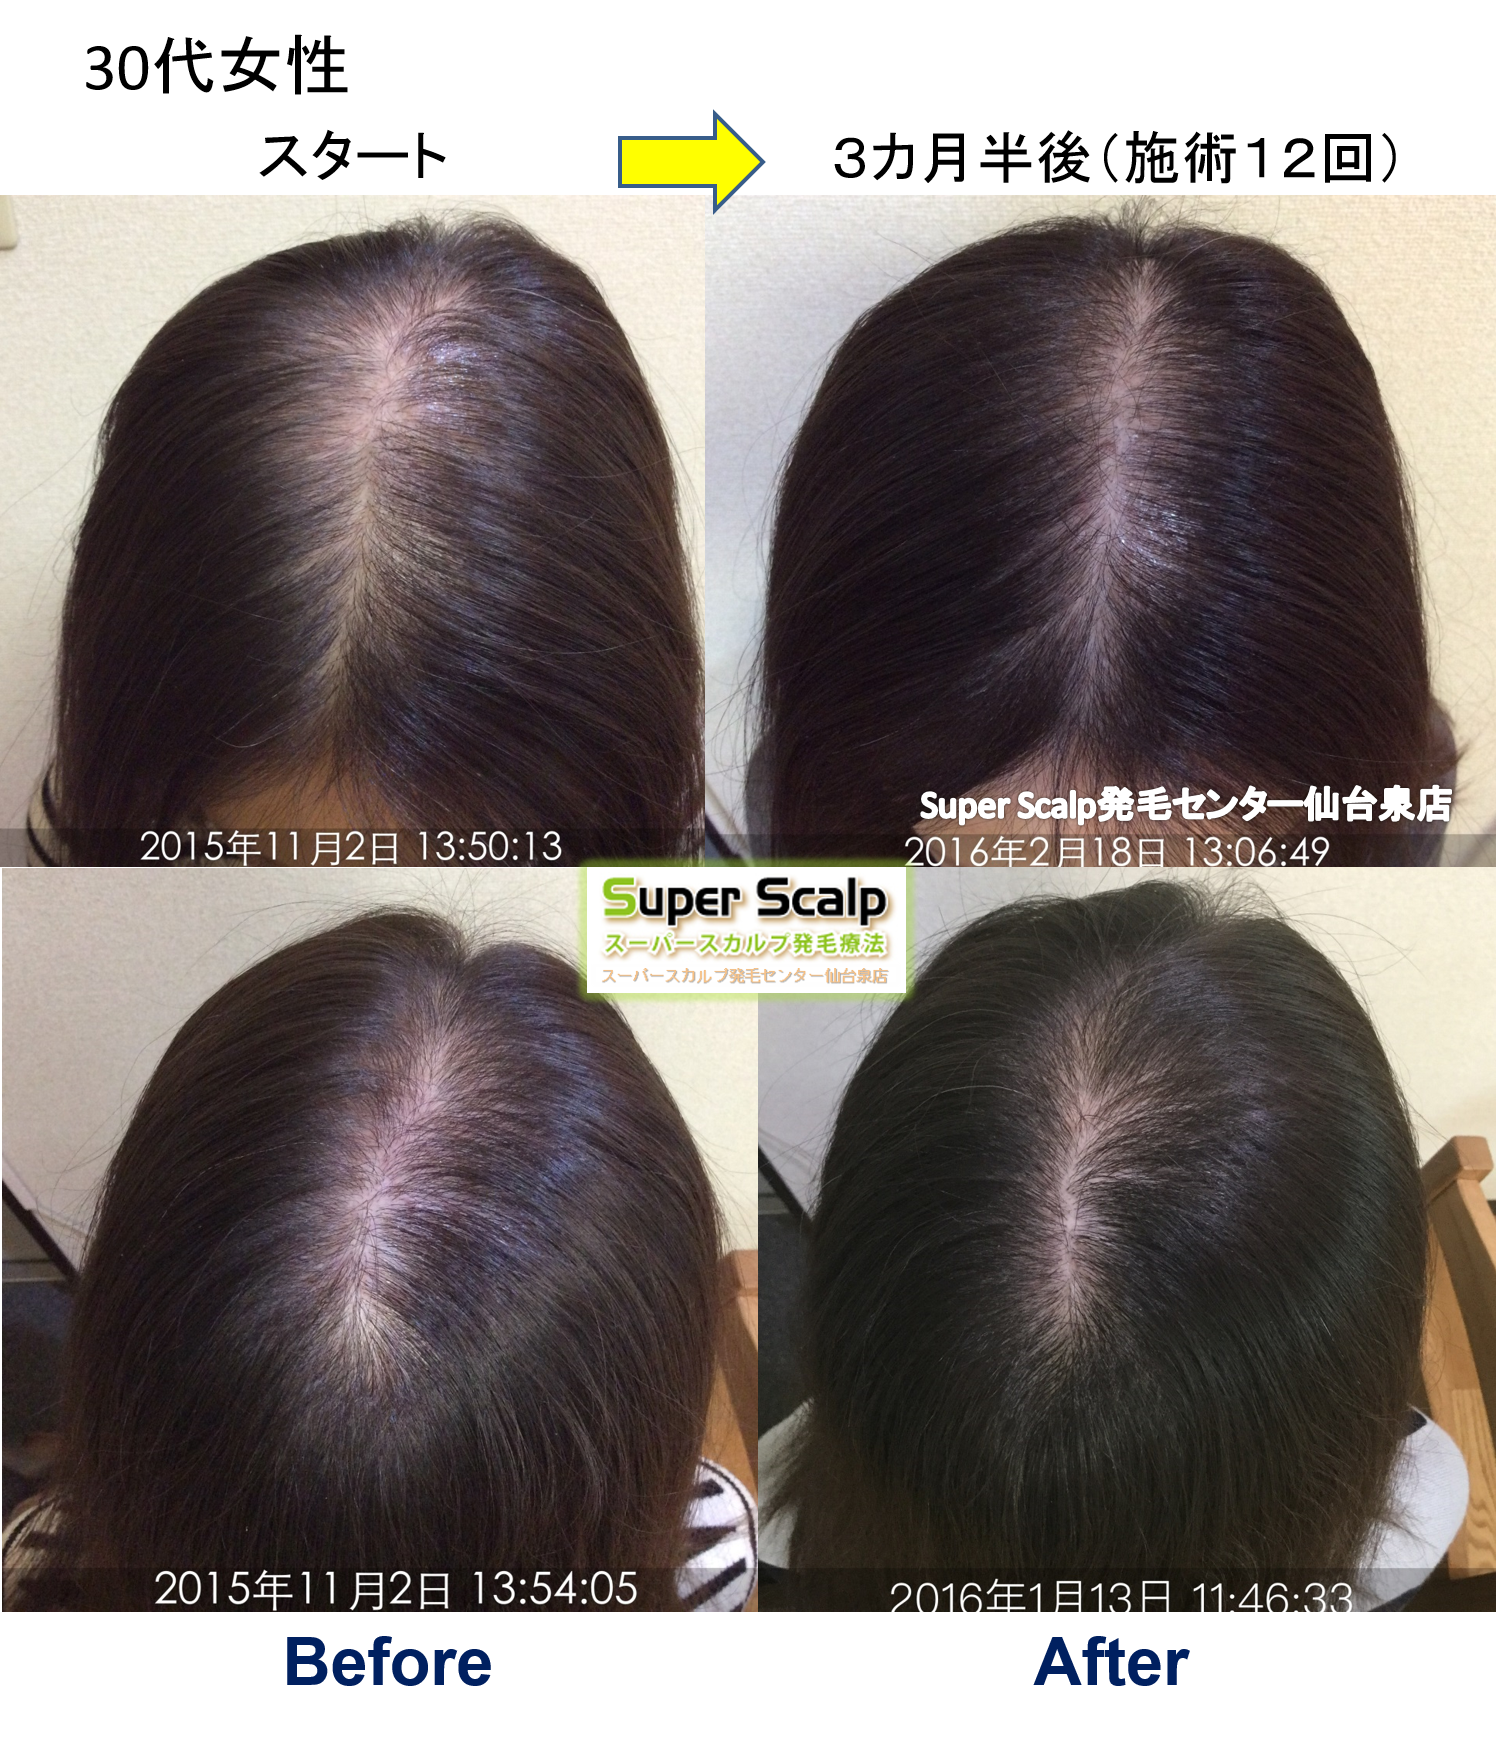 人工甘味料で薄毛に！？仙台市30代女性発毛実績。「頭皮の状態を毎回確認できて、少しずつ改善していることに満足しています。」 仙台で薄毛